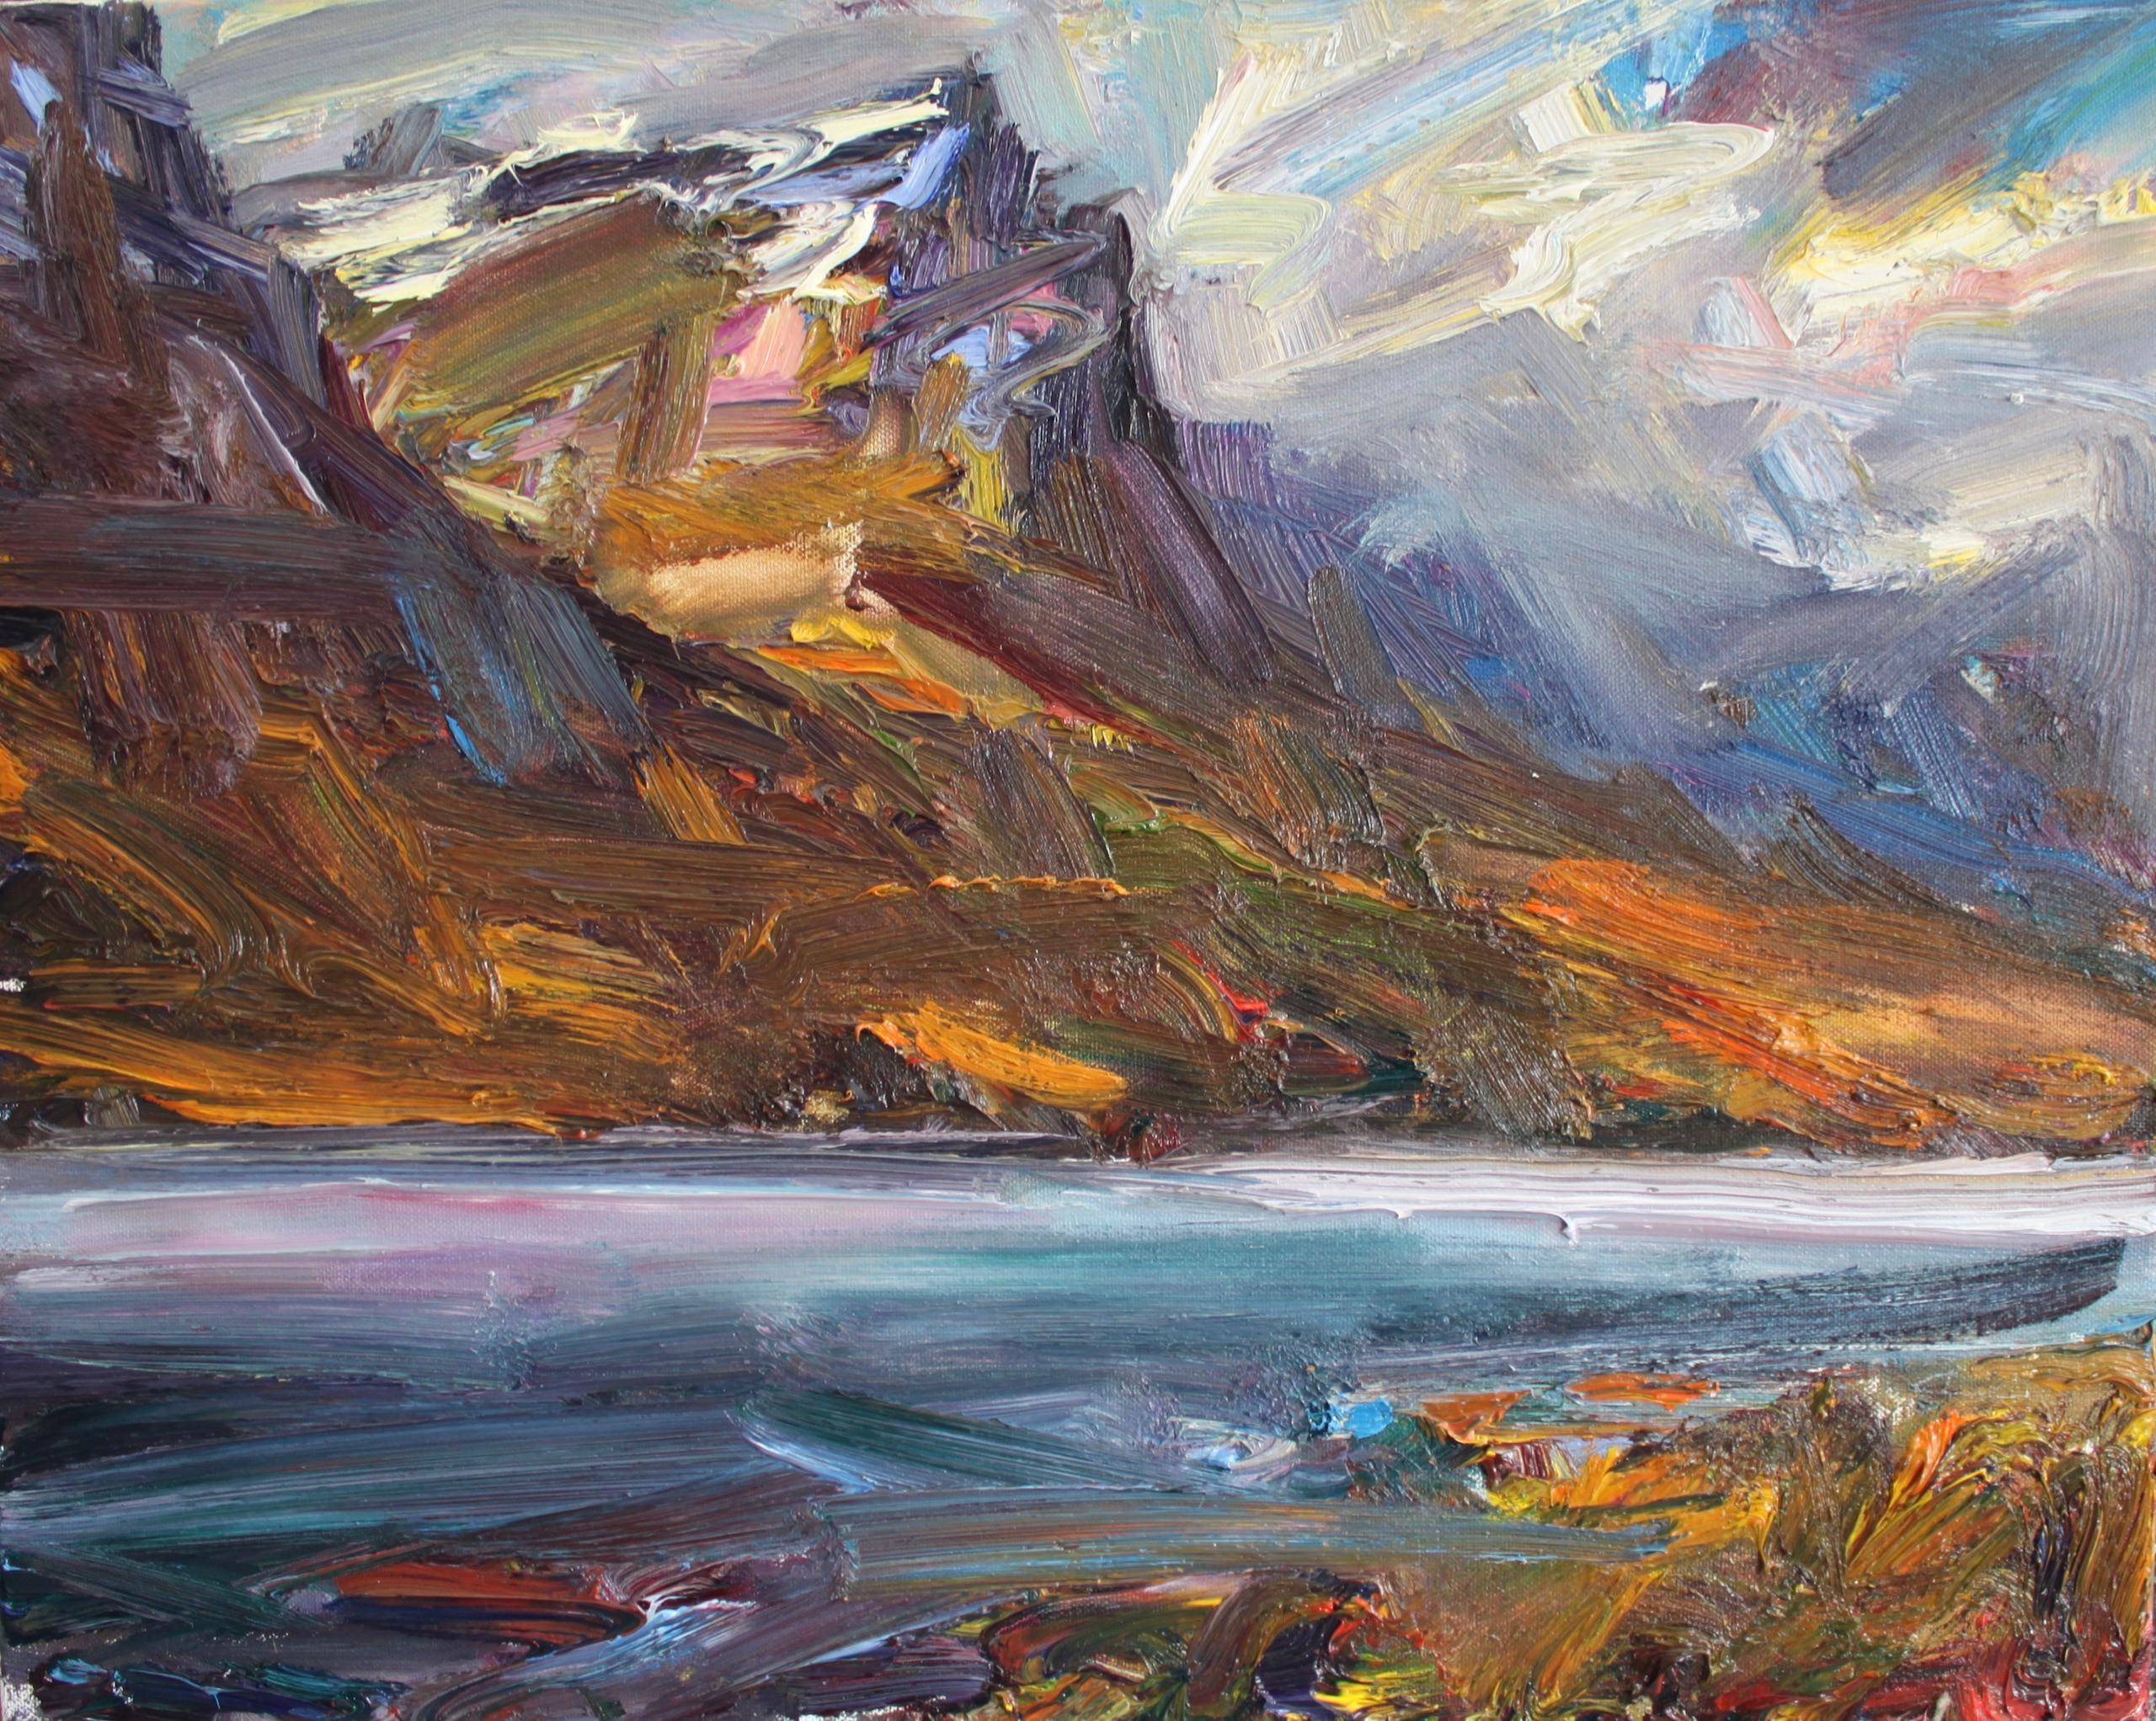 Loch nan Arr by Jonathan Shearer - Landscape oil painting, mountains, blue sky